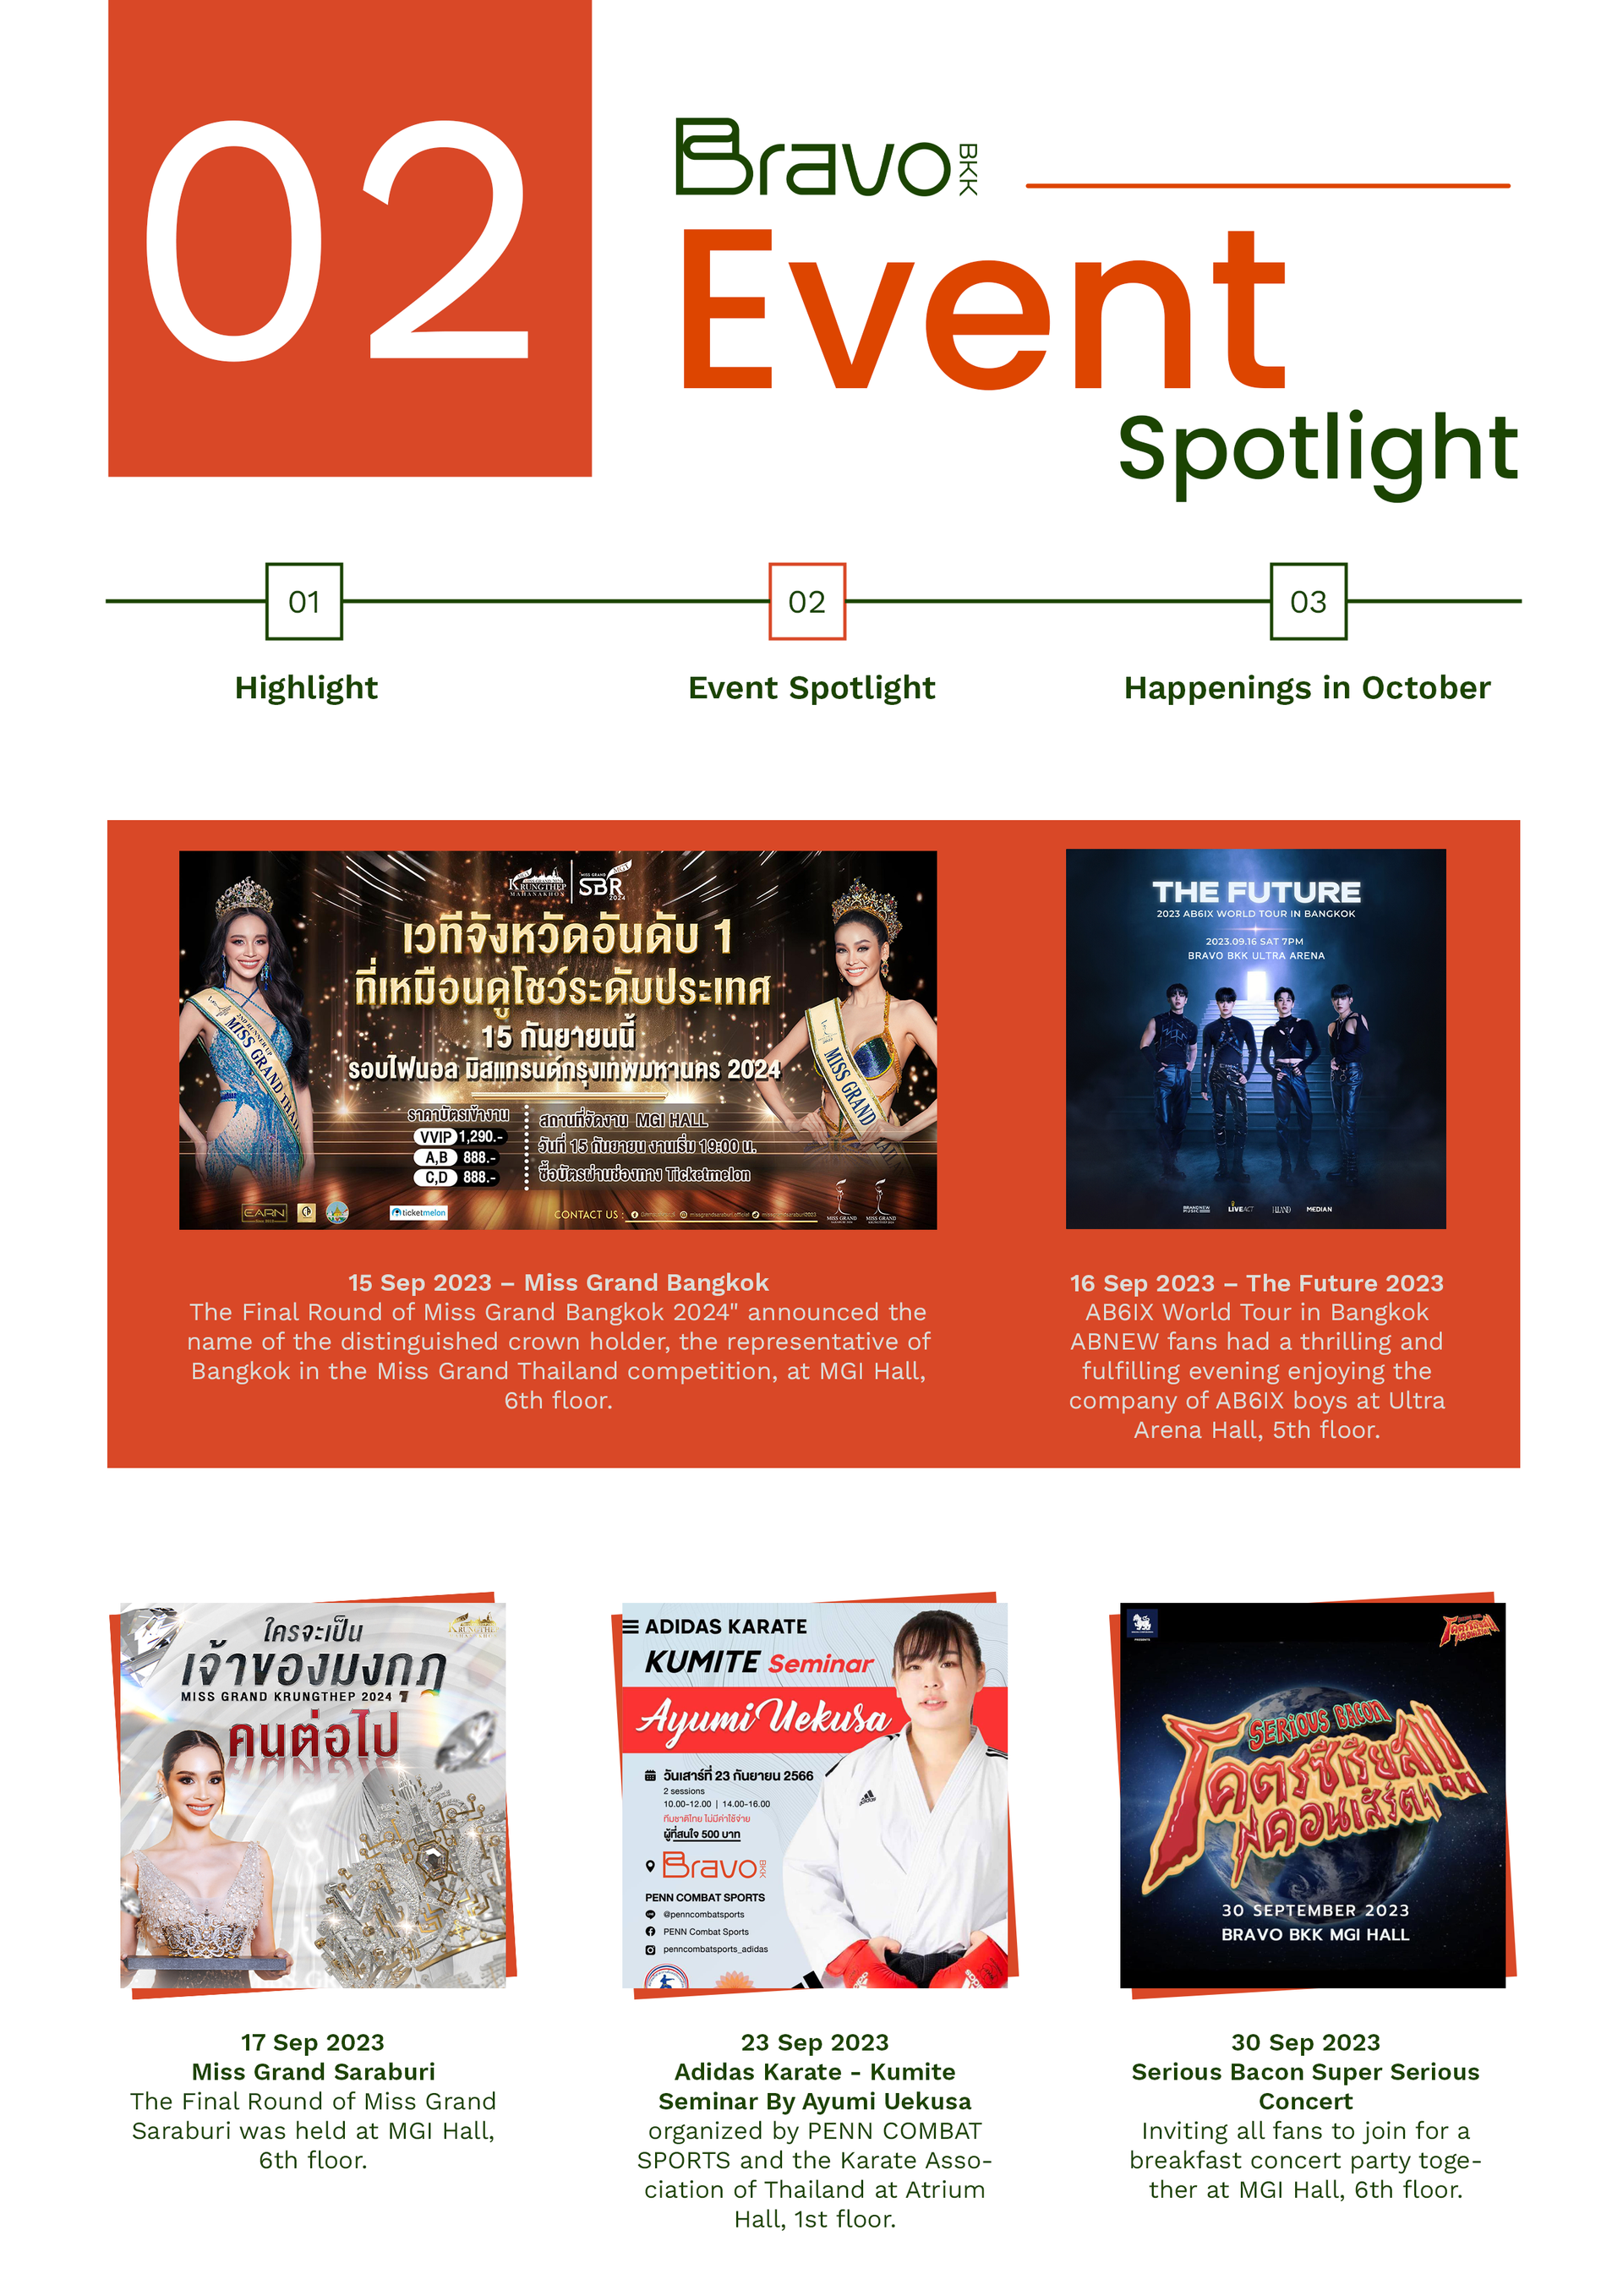 Bravo BKK Newsletter October 23 Issue 1 Event Spotlight